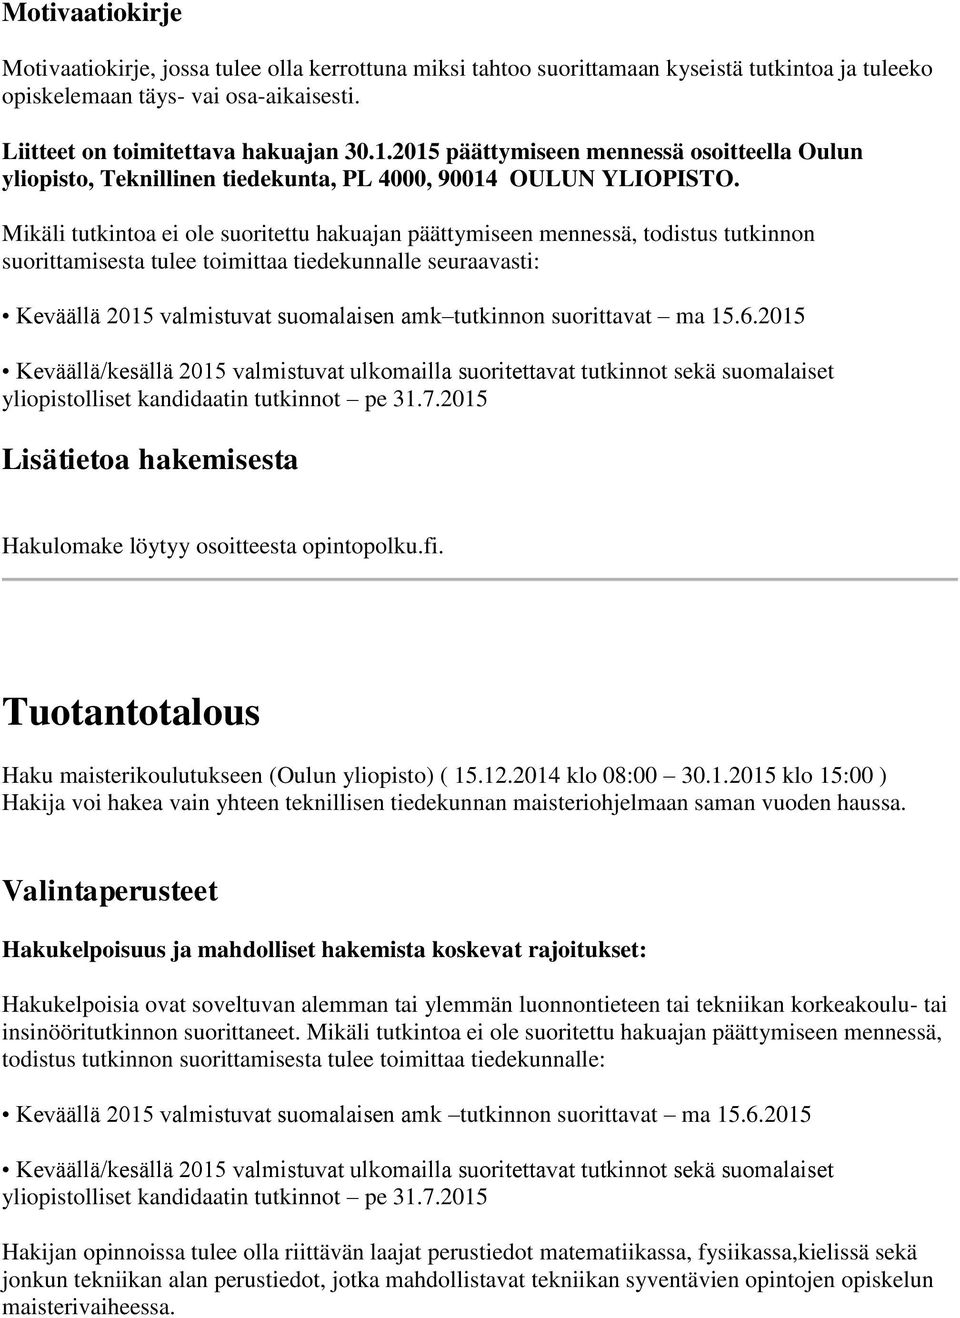 Mikäli tutkintoa ei ole suoritettu hakuajan päättymiseen mennessä, todistus tutkinnon suorittamisesta tulee toimittaa tiedekunnalle seuraavasti: Keväällä 2015 valmistuvat suomalaisen amk tutkinnon